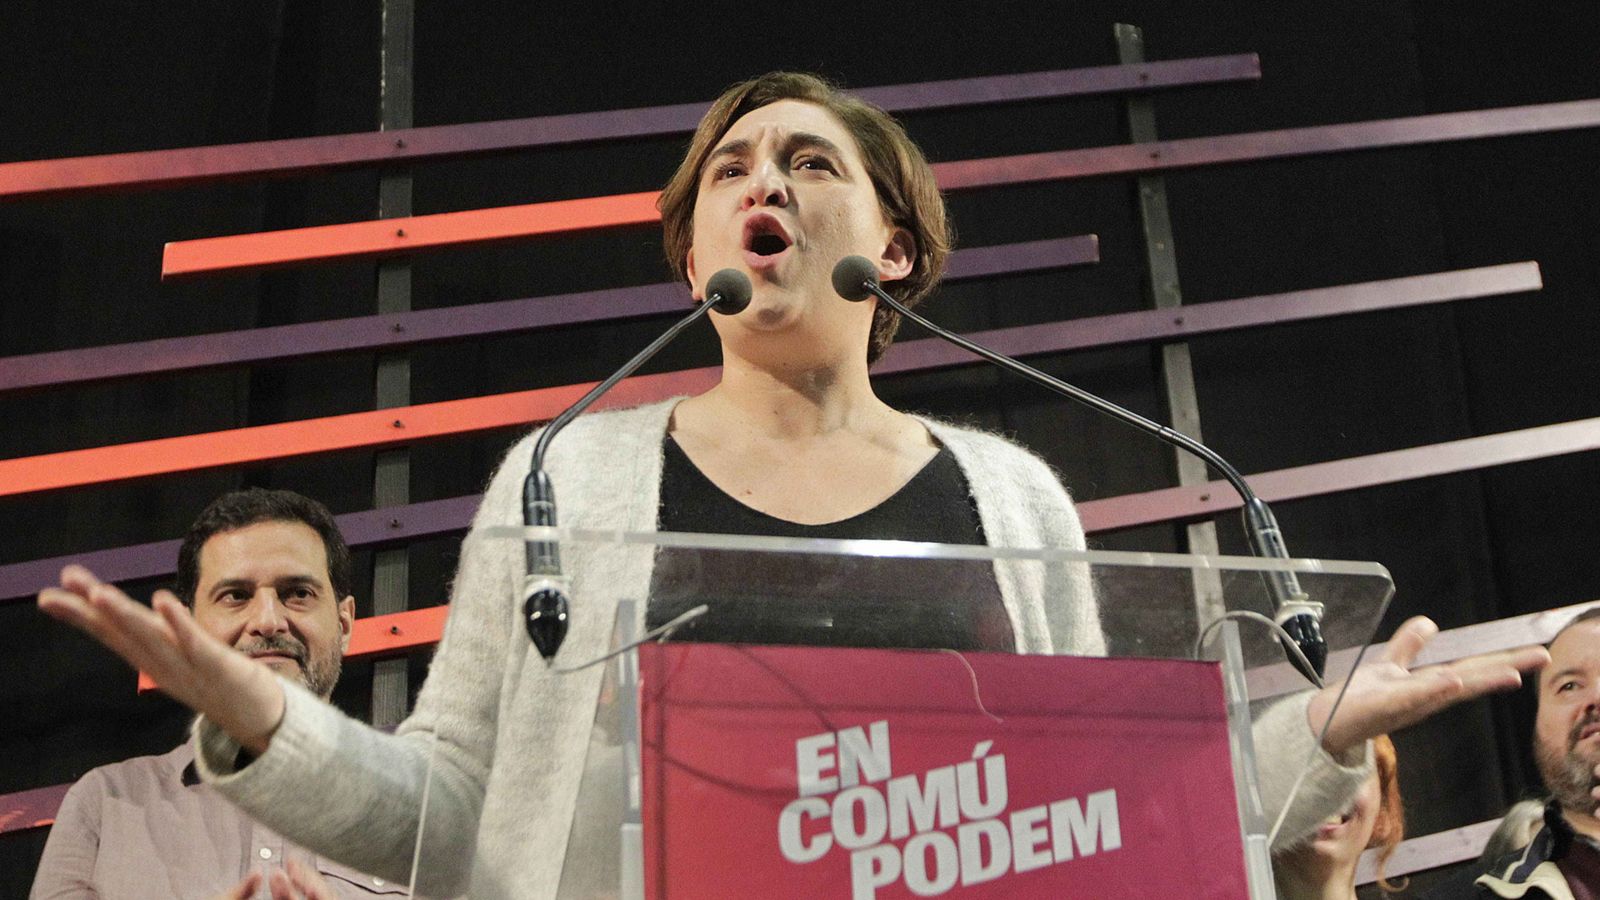 Foto: La alcaldesa de Barcelona, Ada Colau, durante un acto electoral. (Efe)